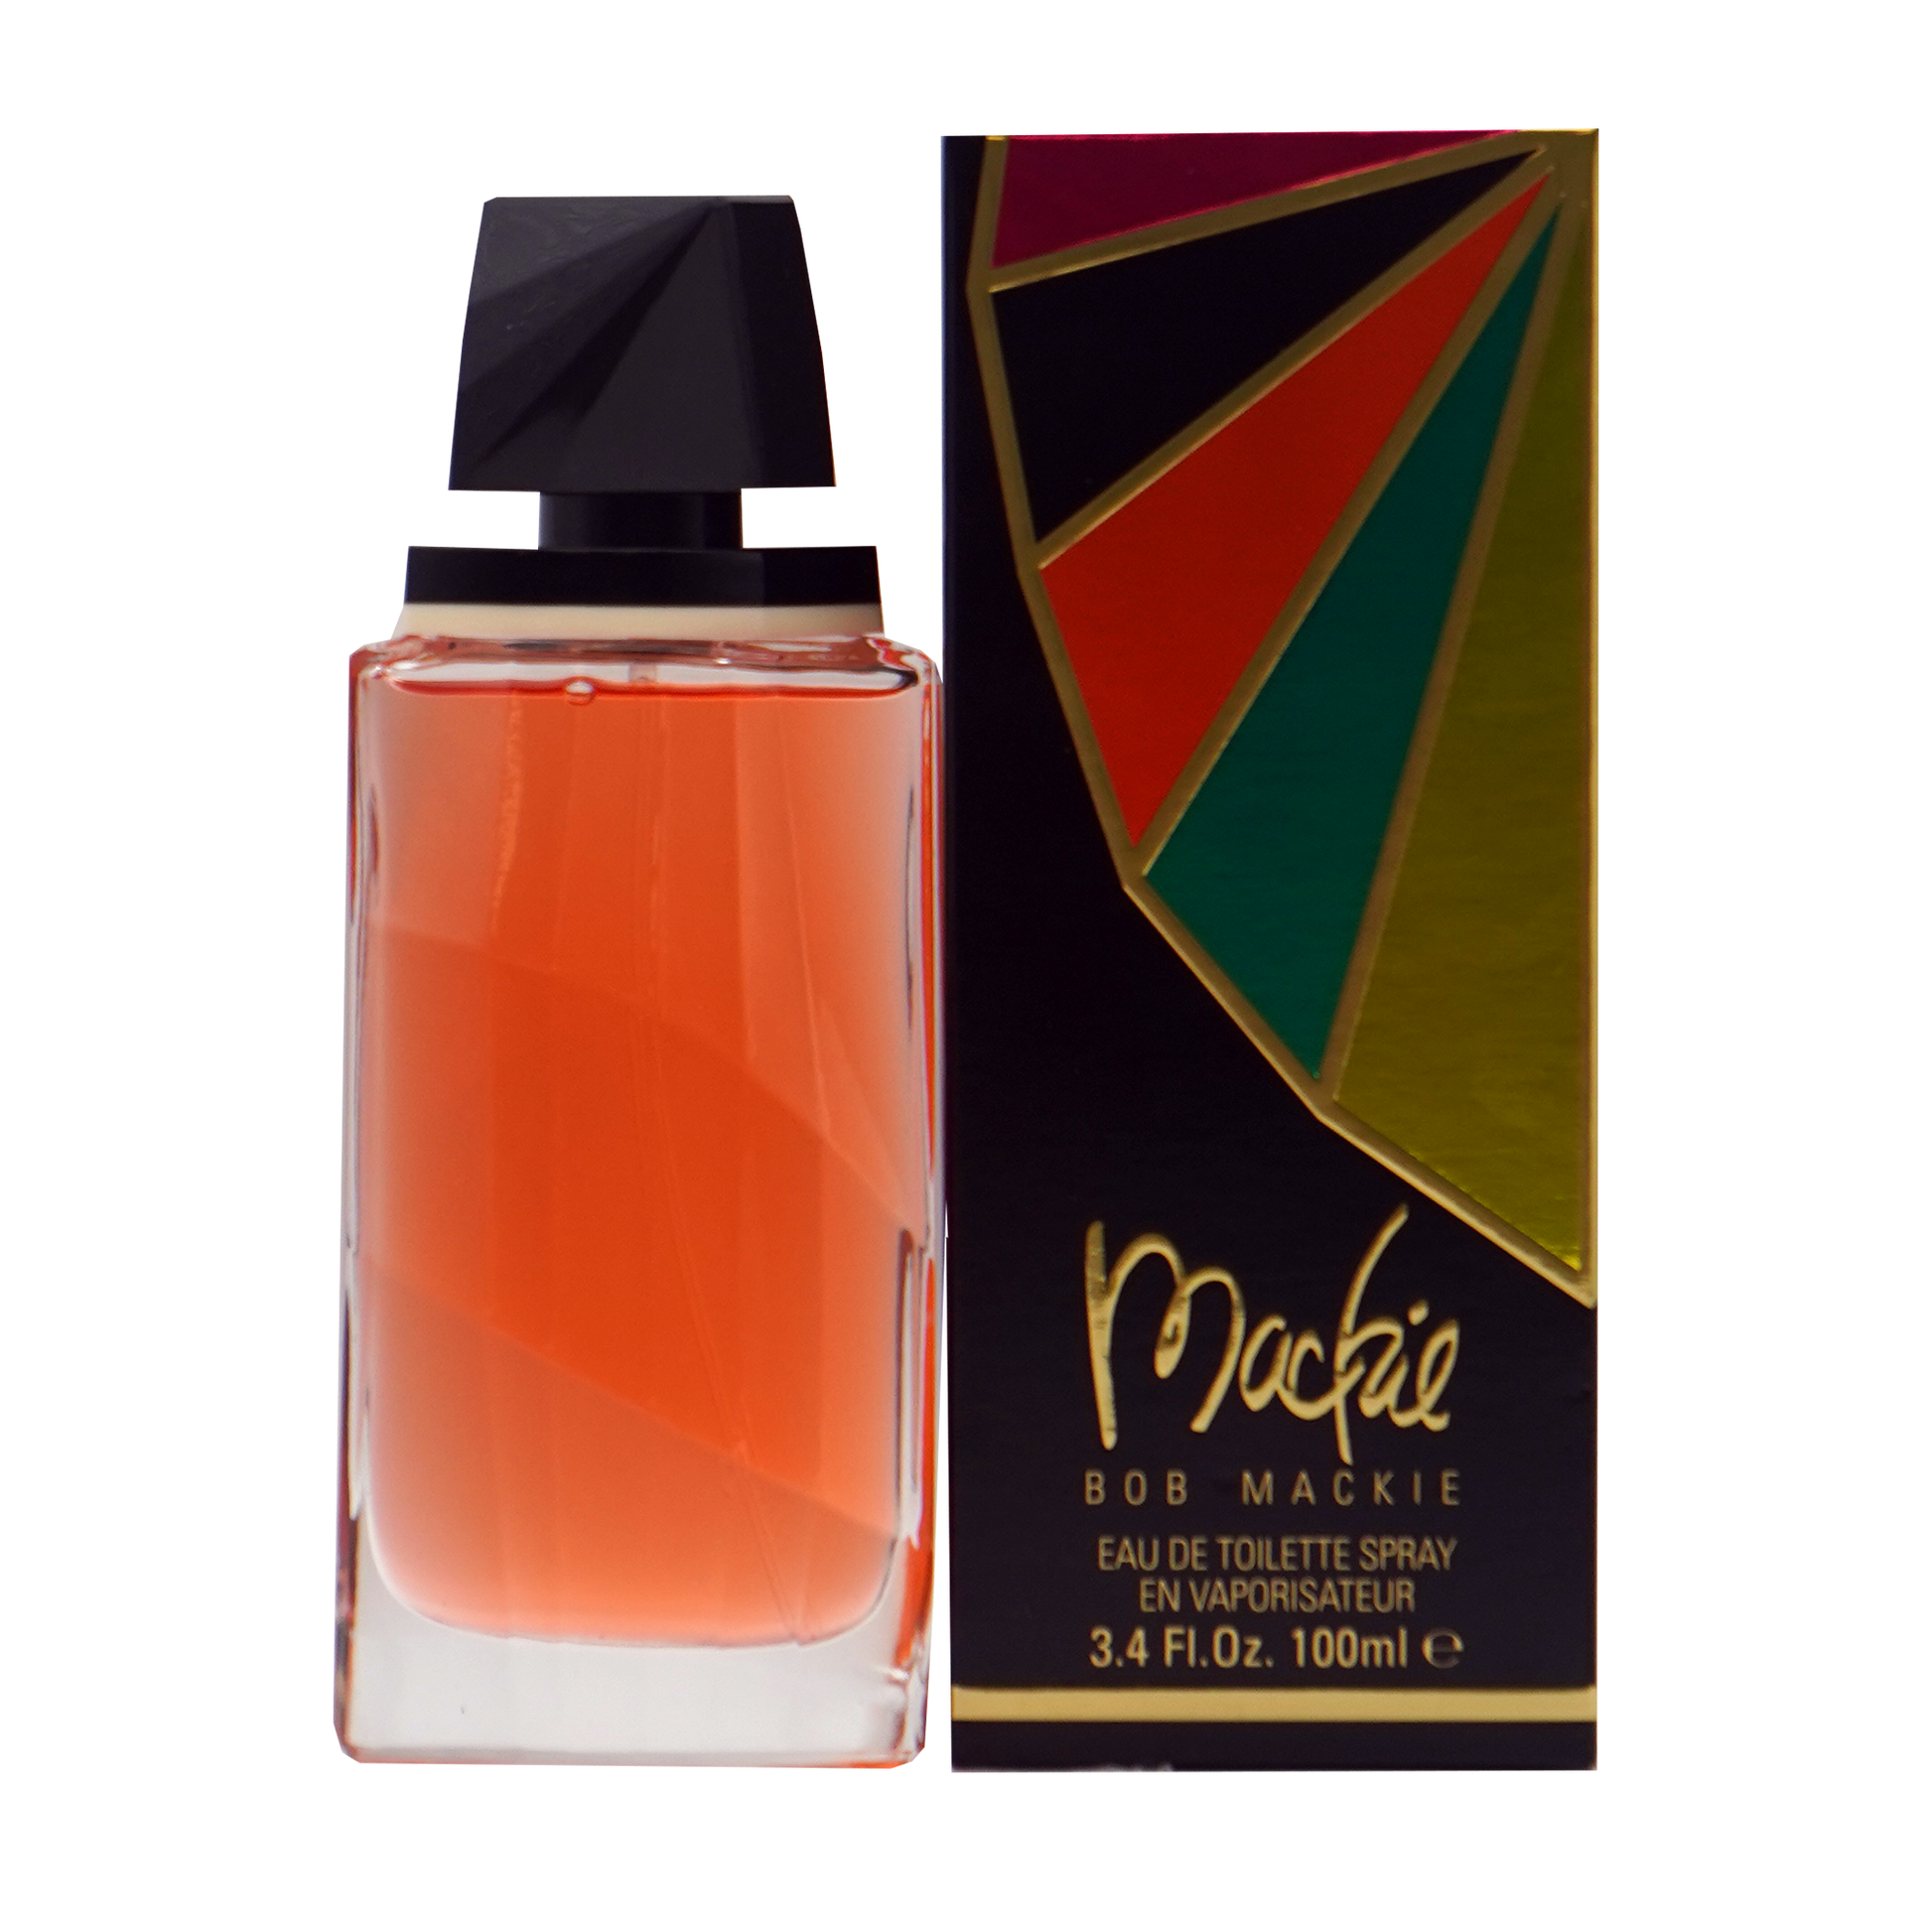 Bob Mackie Perfumes, Mackie Perfume - Bob Mackie - 3.4 oz - Eau de Toilette - Fragrance - 860950000204 - Fragrance